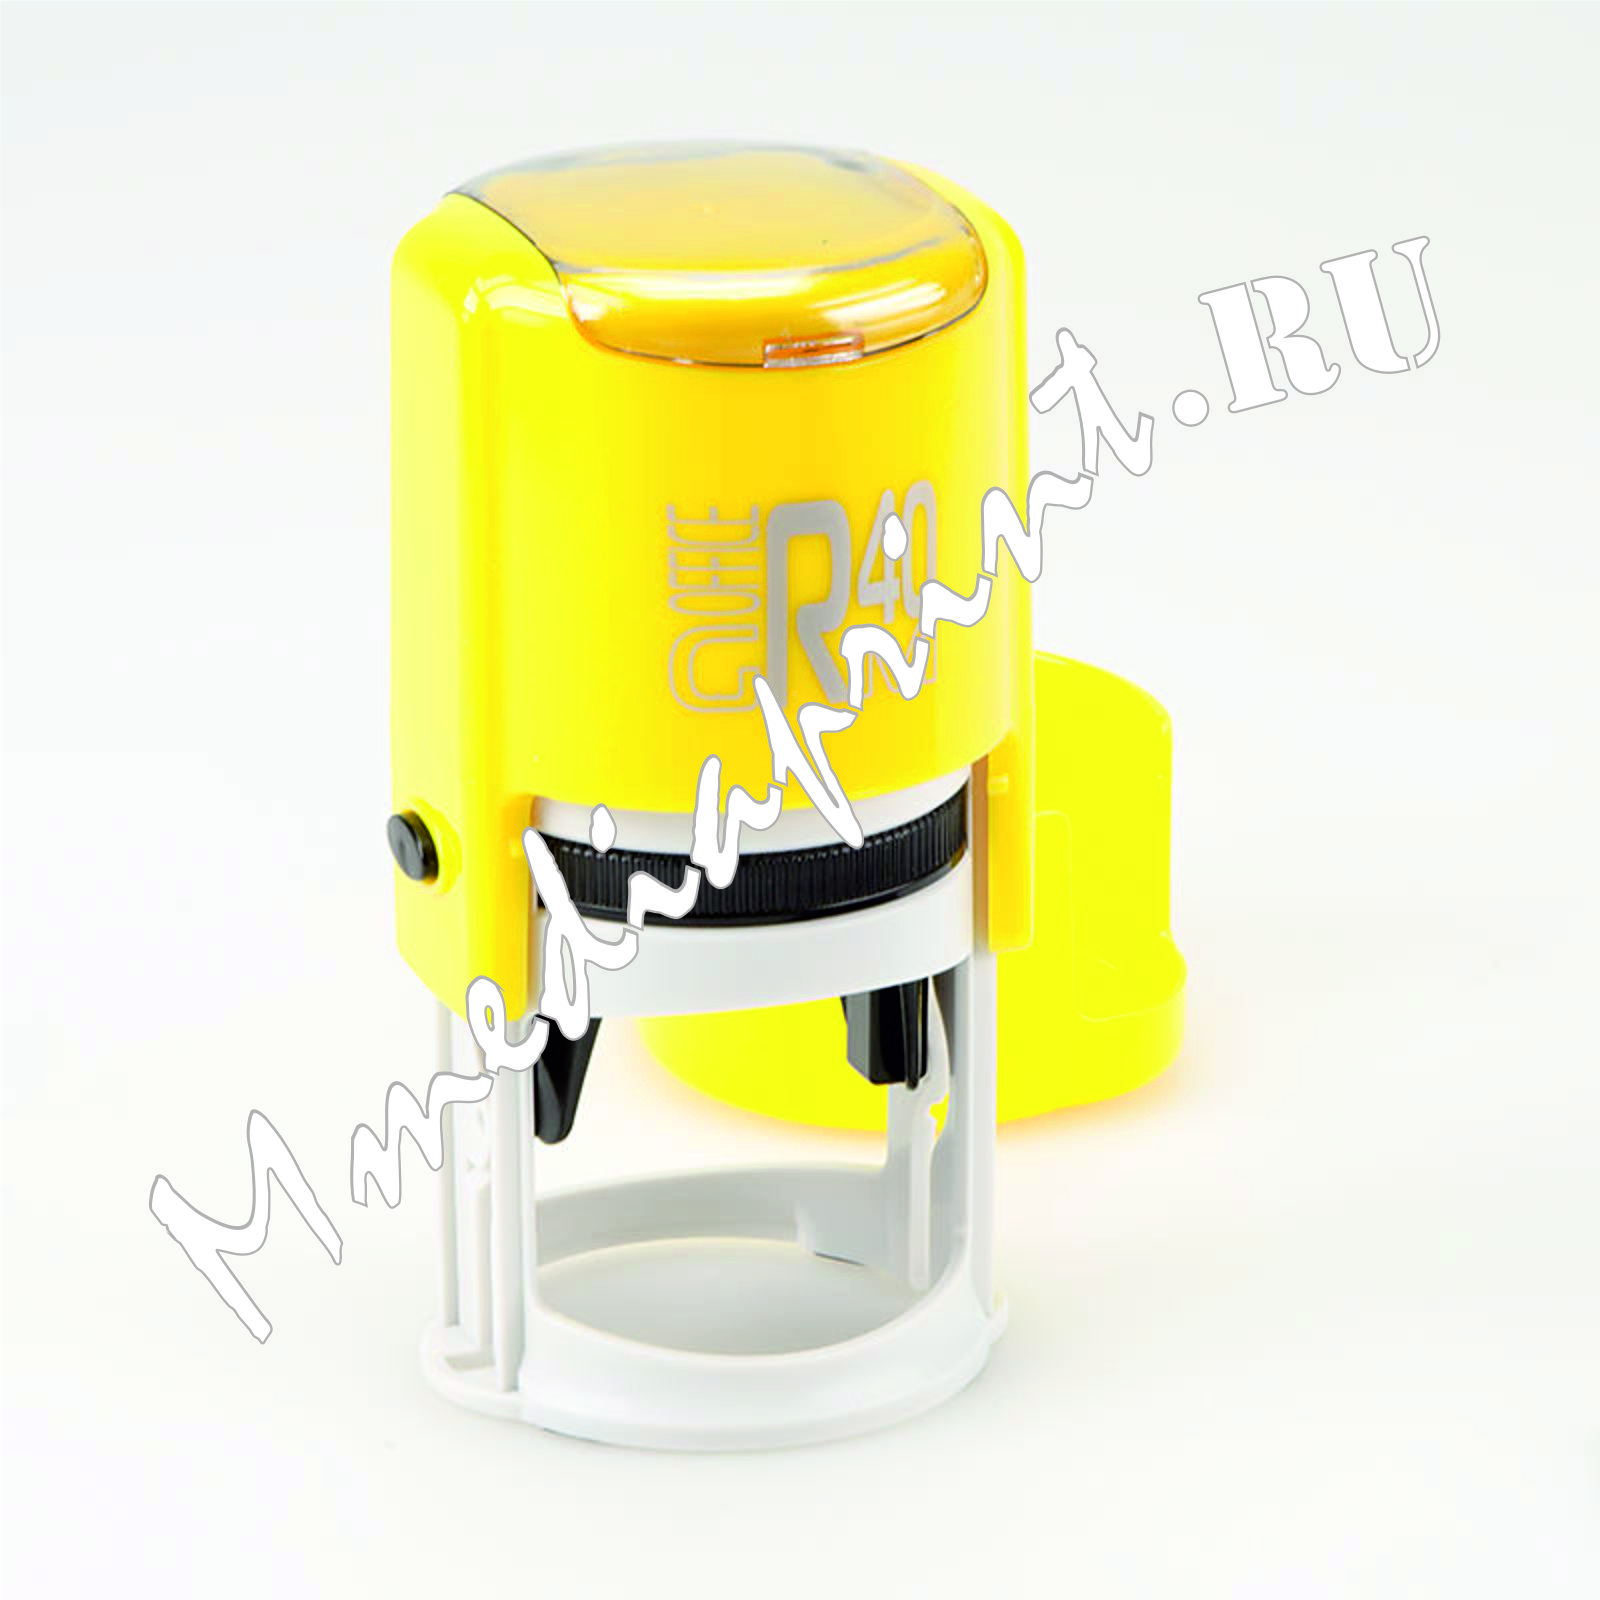 Автоматическая оснастка для печати с защитным боксом цвет Желтый глянцевый диаметр 40мм.